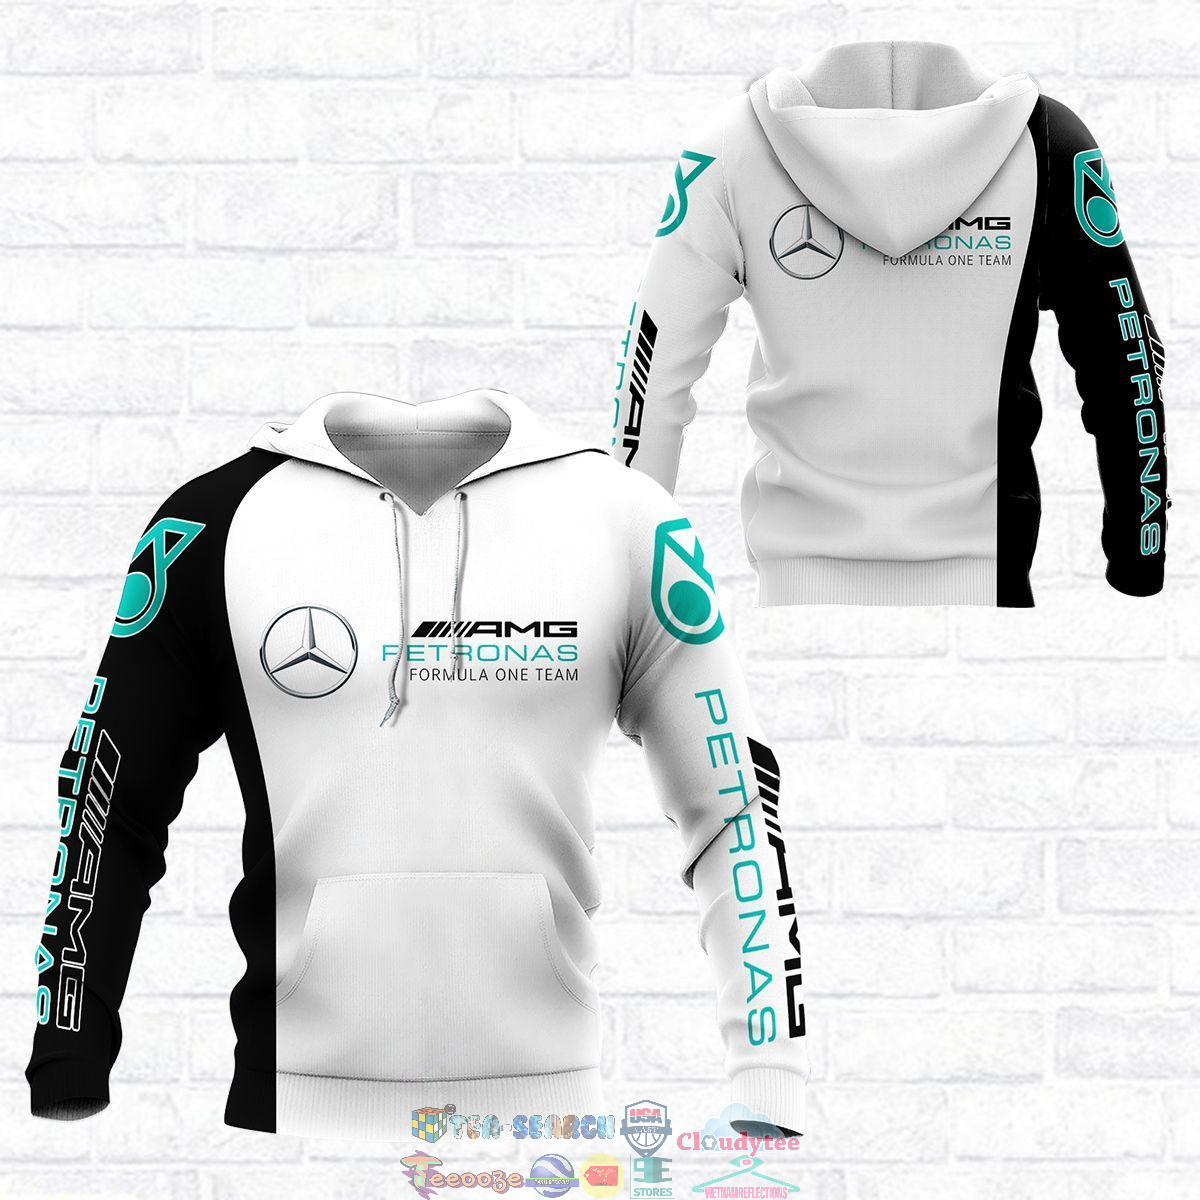 AvsNHBMN-TH150822-27xxxMercedes-AMG-Petronas-F1-Team-ver-1-3D-hoodie-and-t-shirt3.jpg